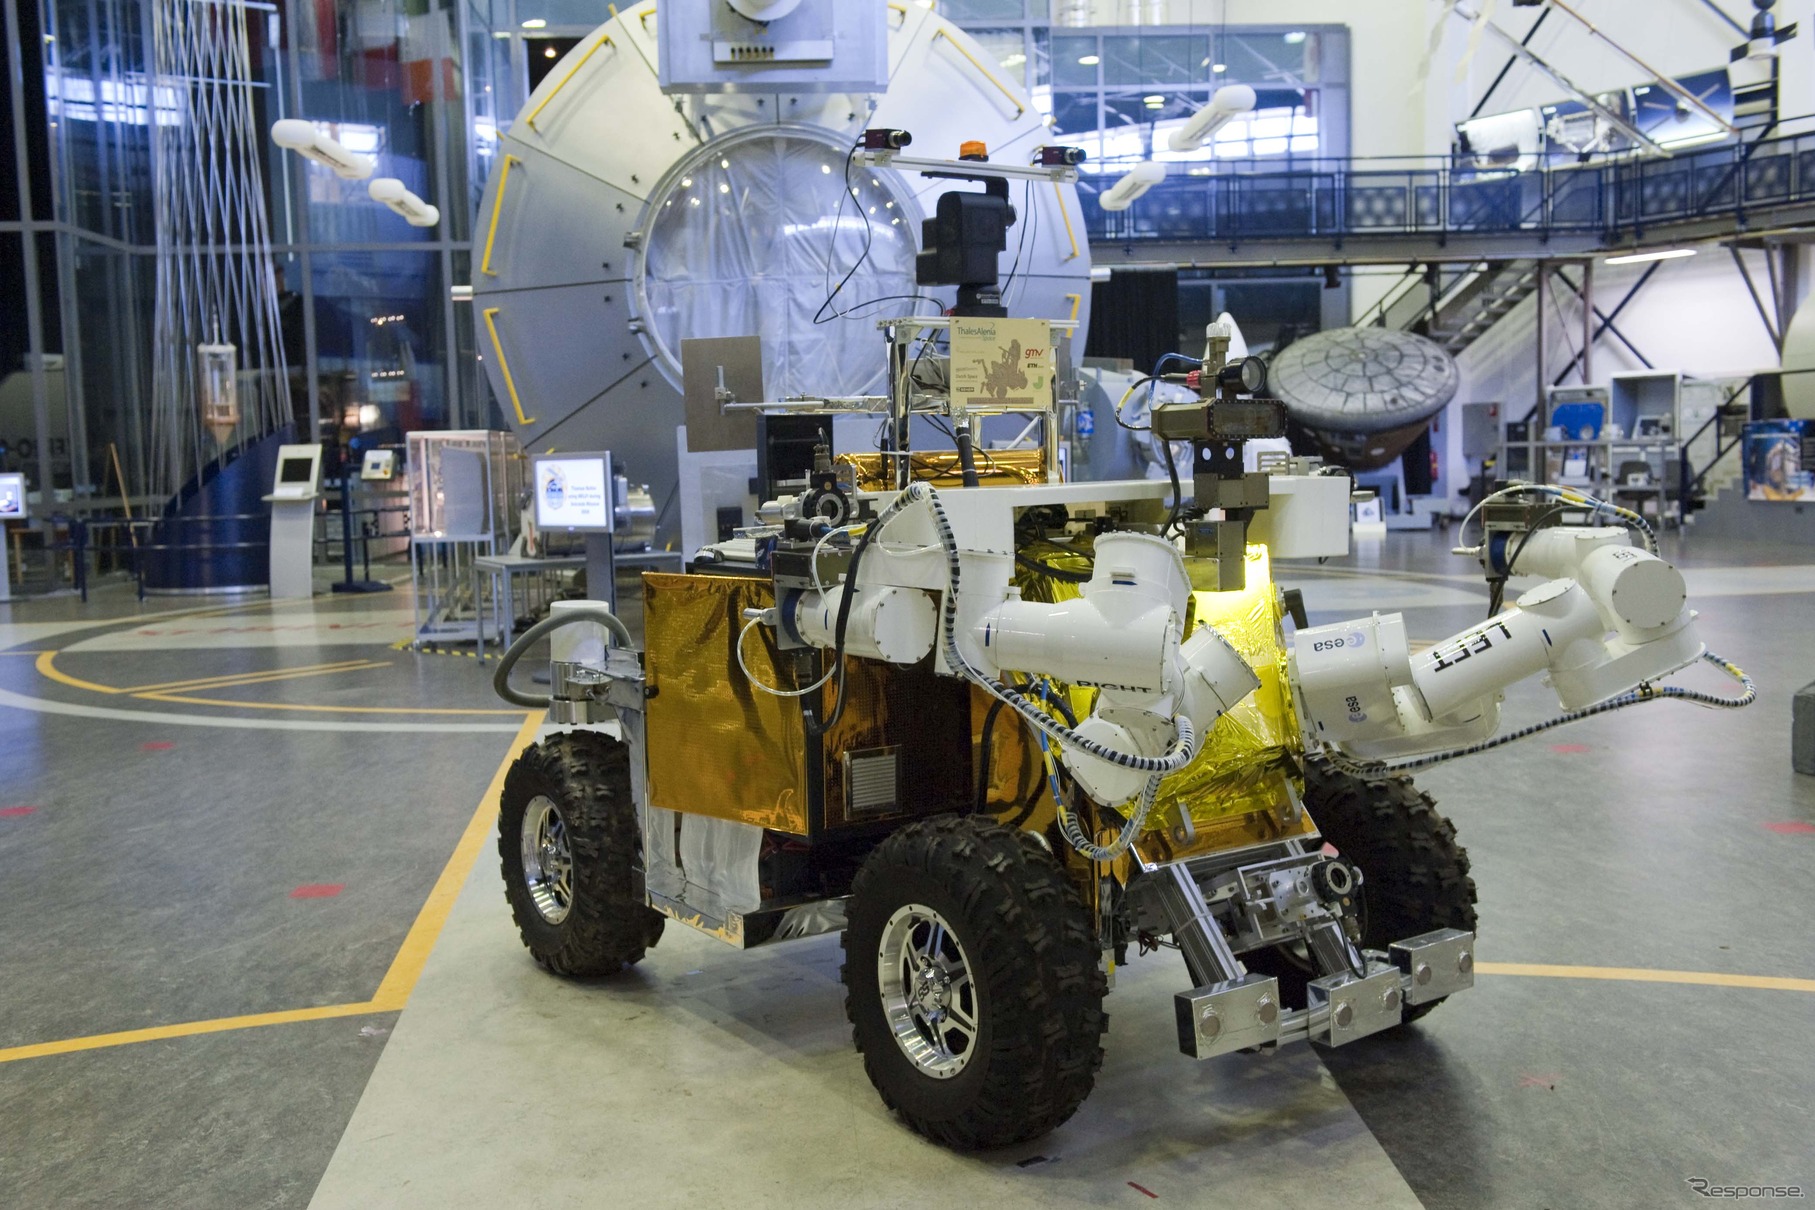 ユーロボットローバー試験機。2010年6月撮影